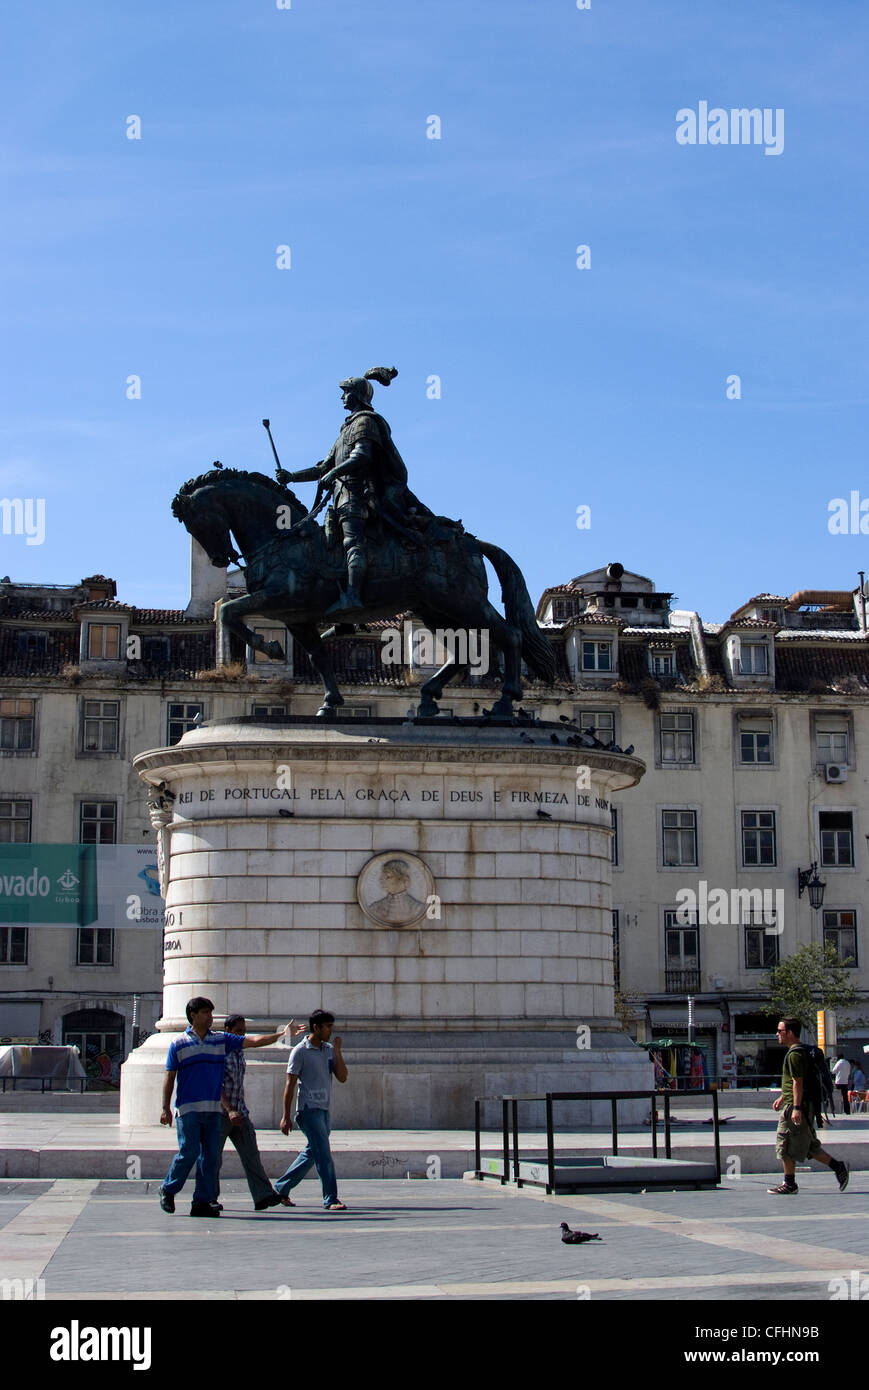 Statue d'un homme sur un cheval, place Figueira, Lisbonne, Portugal, Europe Banque D'Images